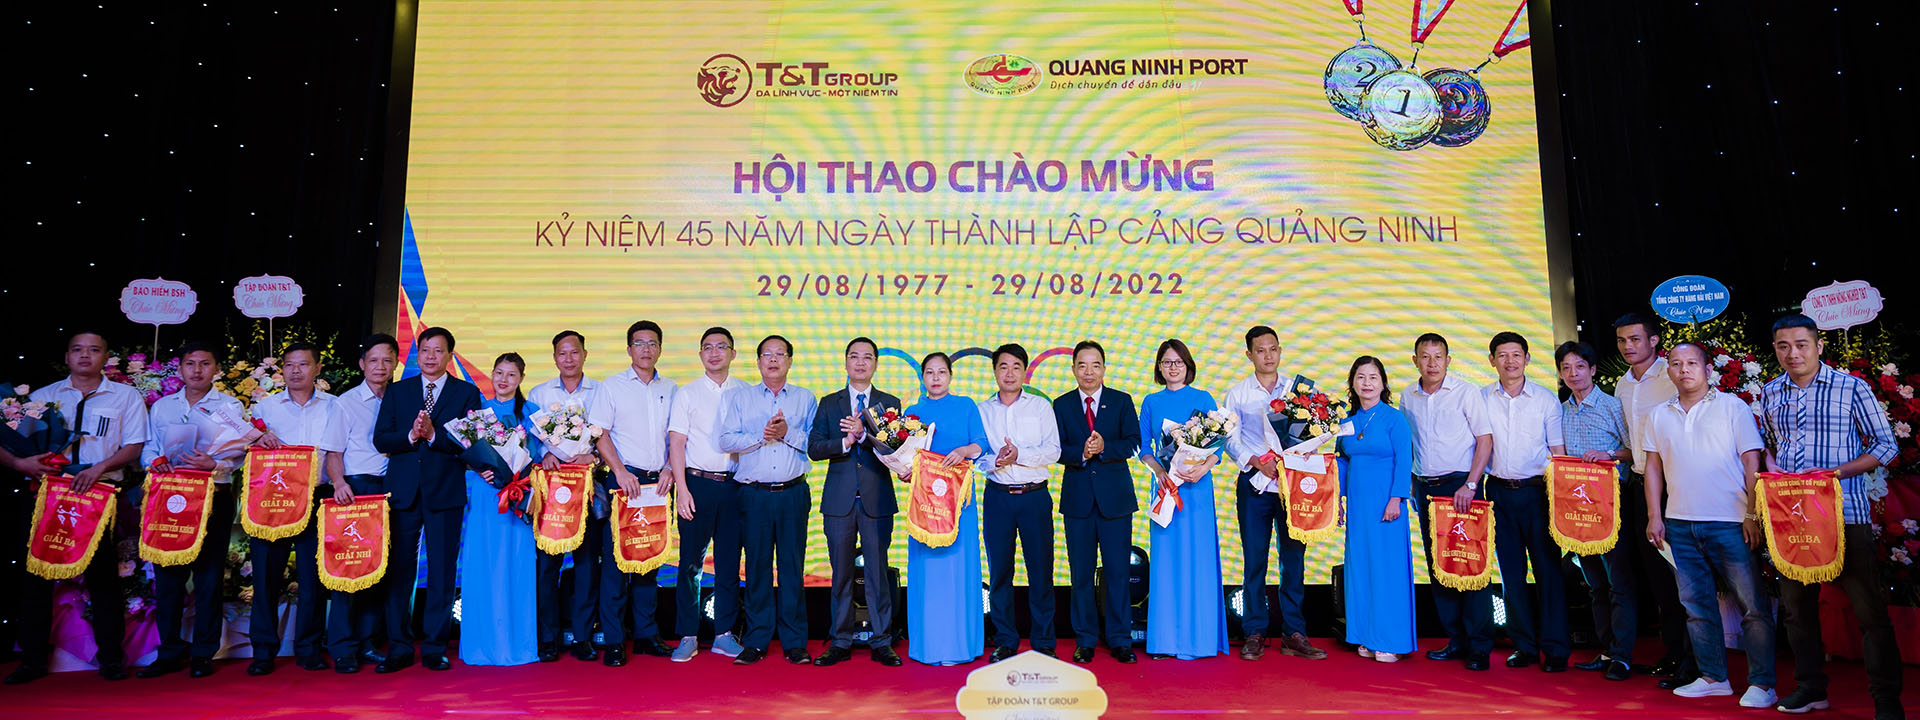 THÔNG BÁO CHÀO GIÁ CẠNH TRANH. Công trình: Thí nghiệm hệ thống điện công ty CP Cảng Quảng Ninh 2018